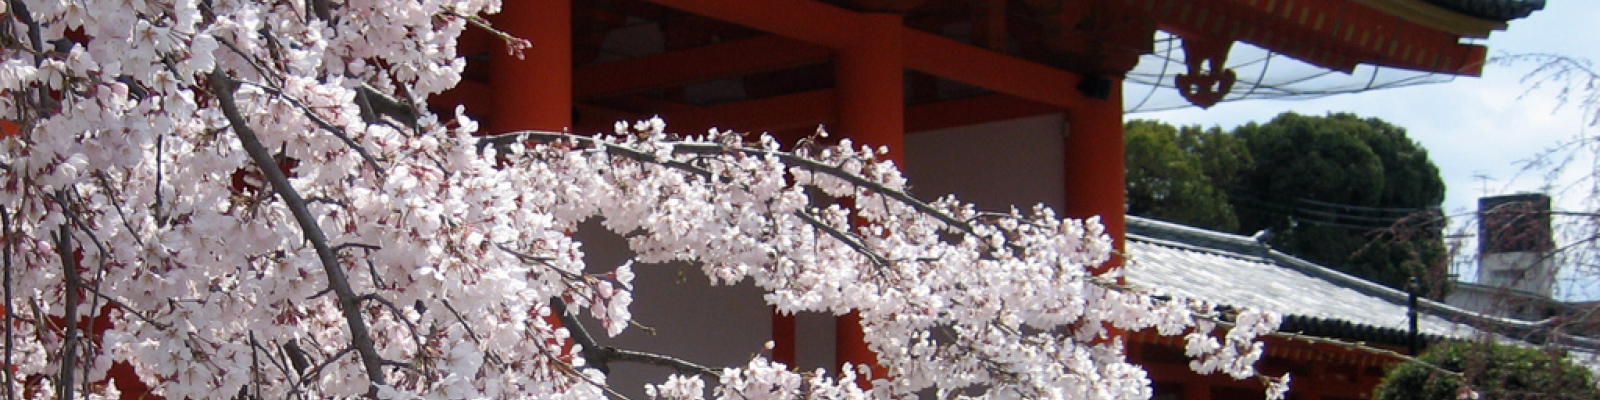 Japan Cherry Blossom (Jason Karsh 2010)